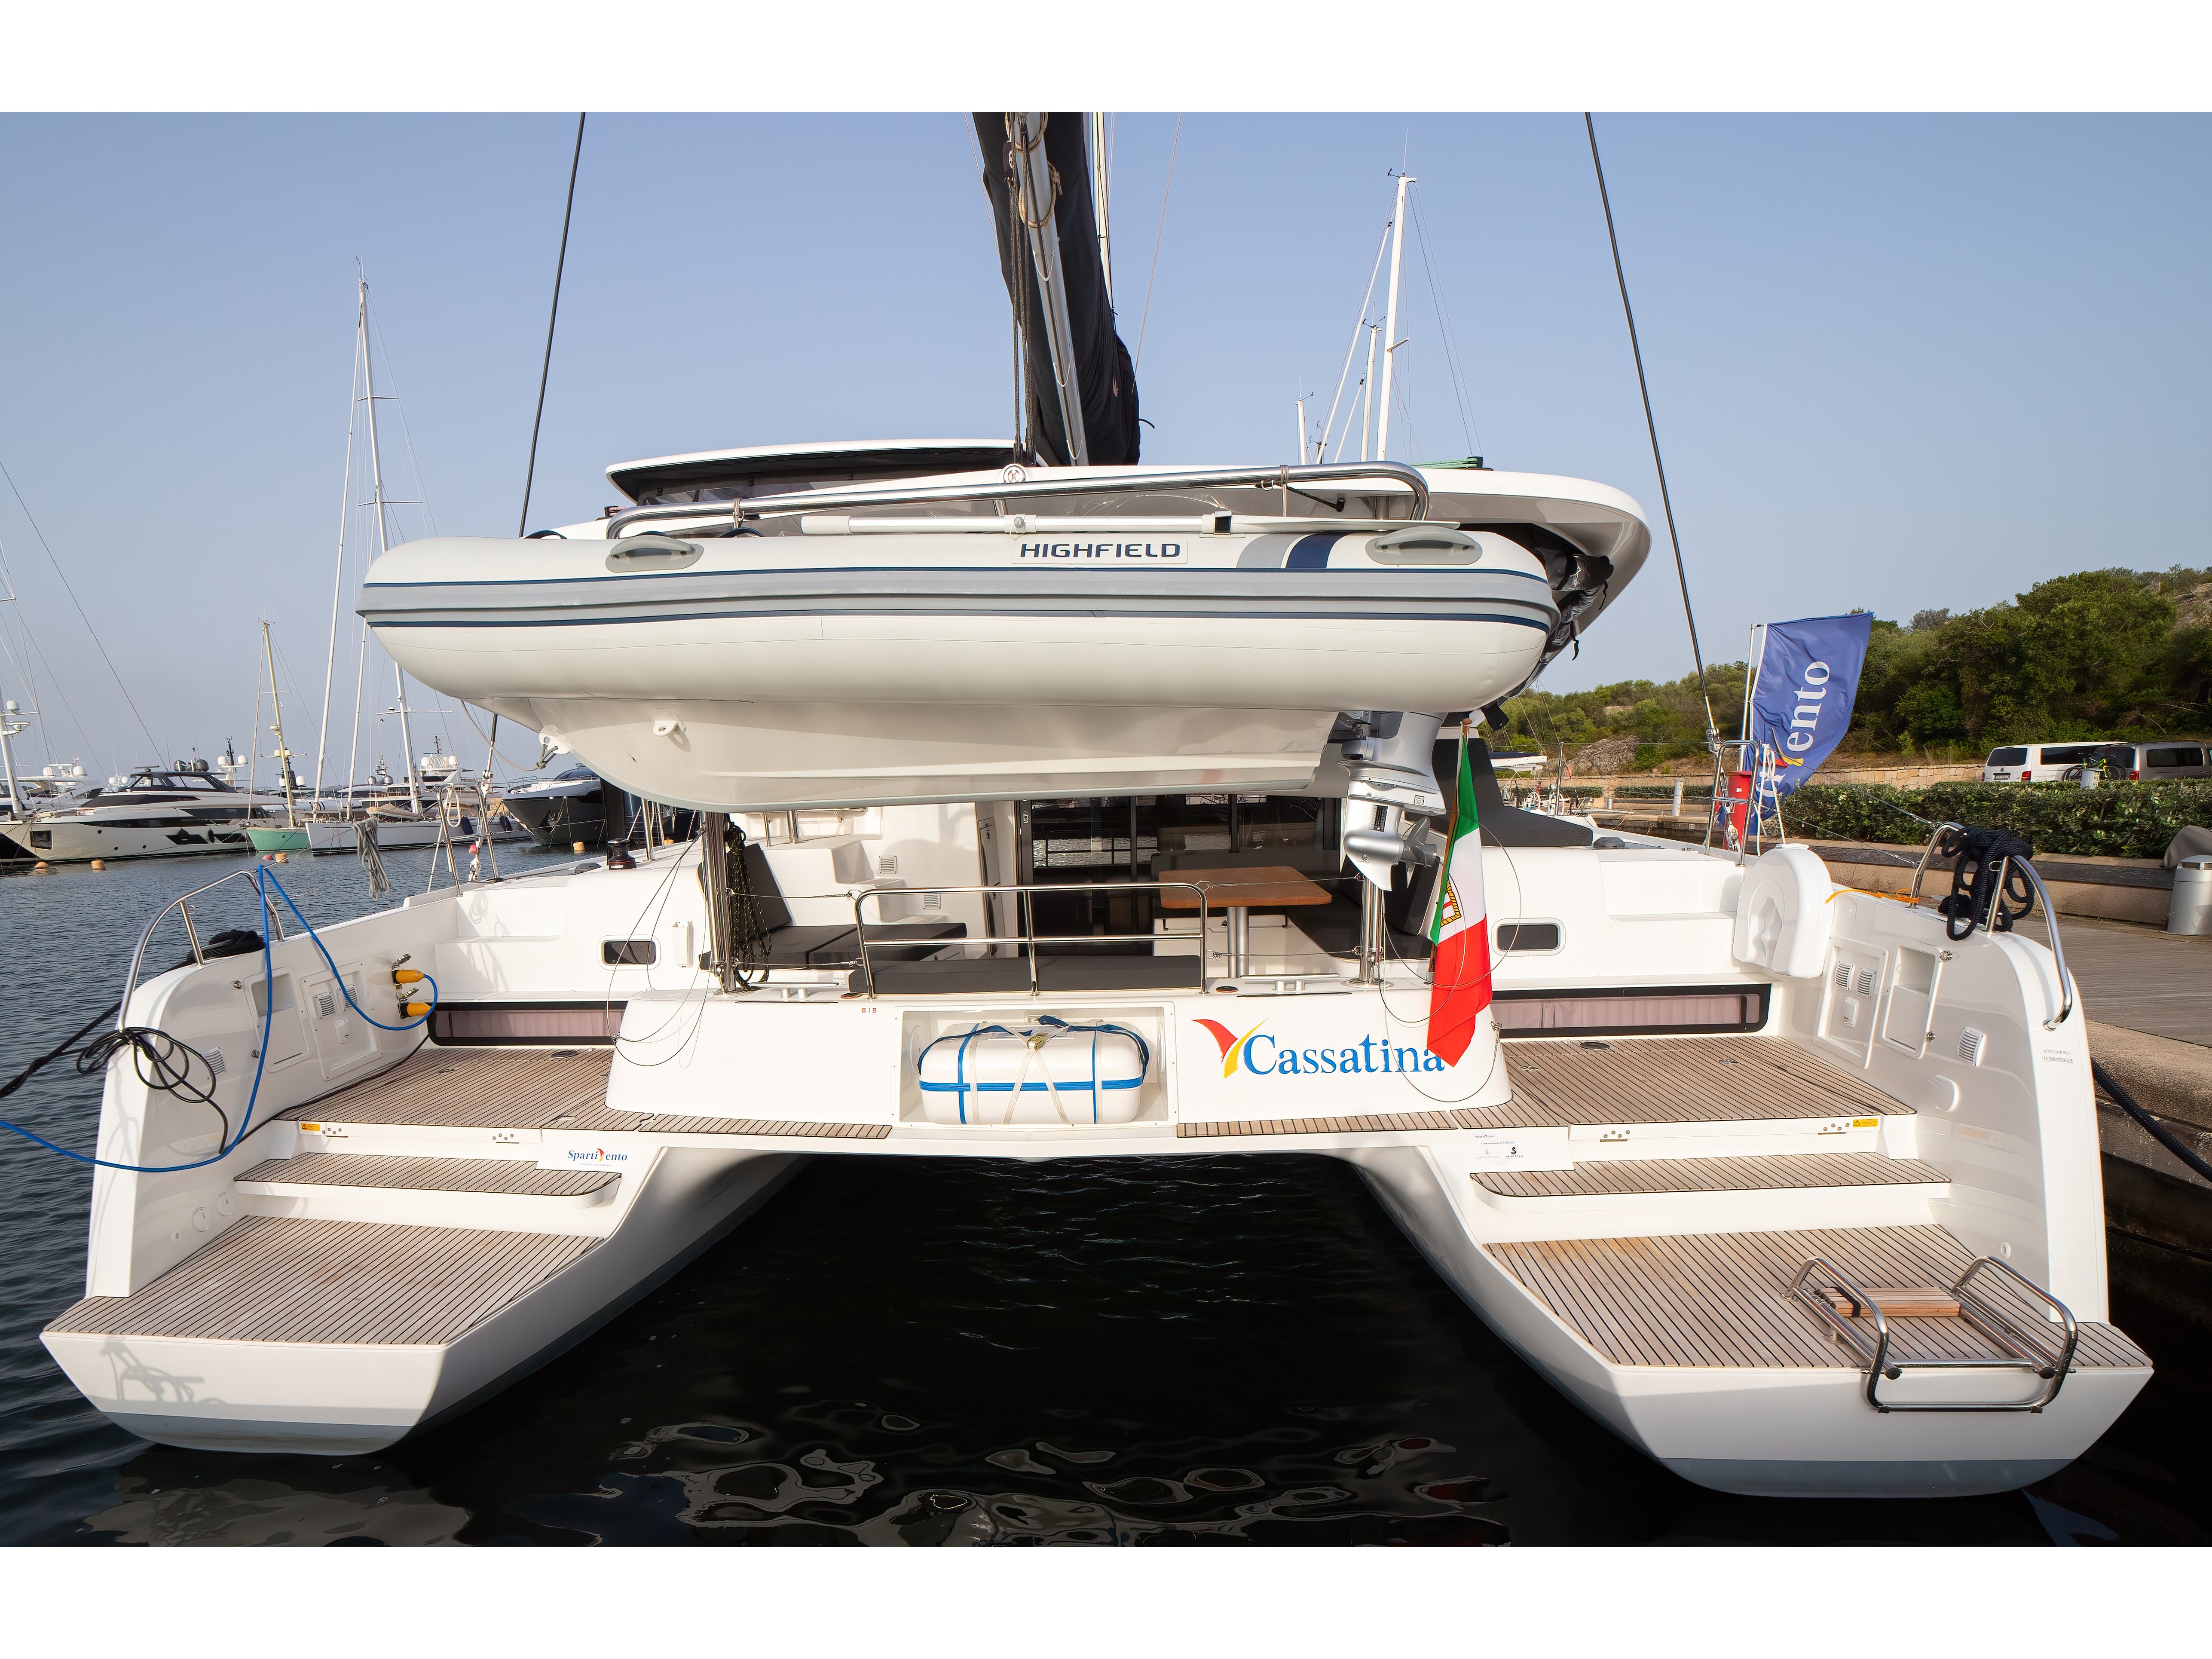 Lagoon 42 - Yacht Charter Olbia & Boat hire in Italy Sardinia Costa Smeralda Olbia Marina di Olbia 2